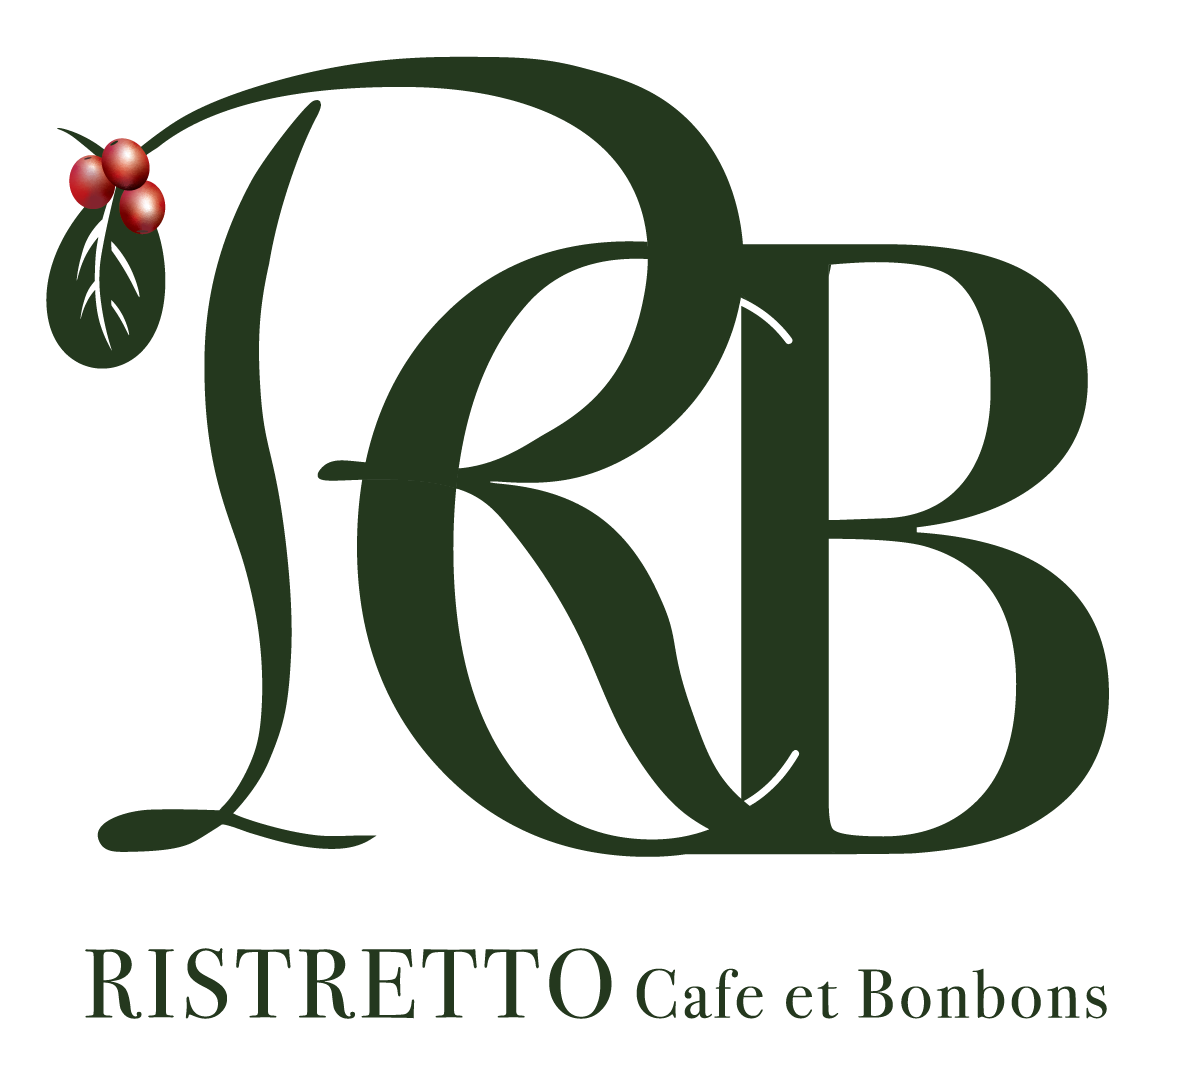 RISTRETTO Cafe et Bonbons